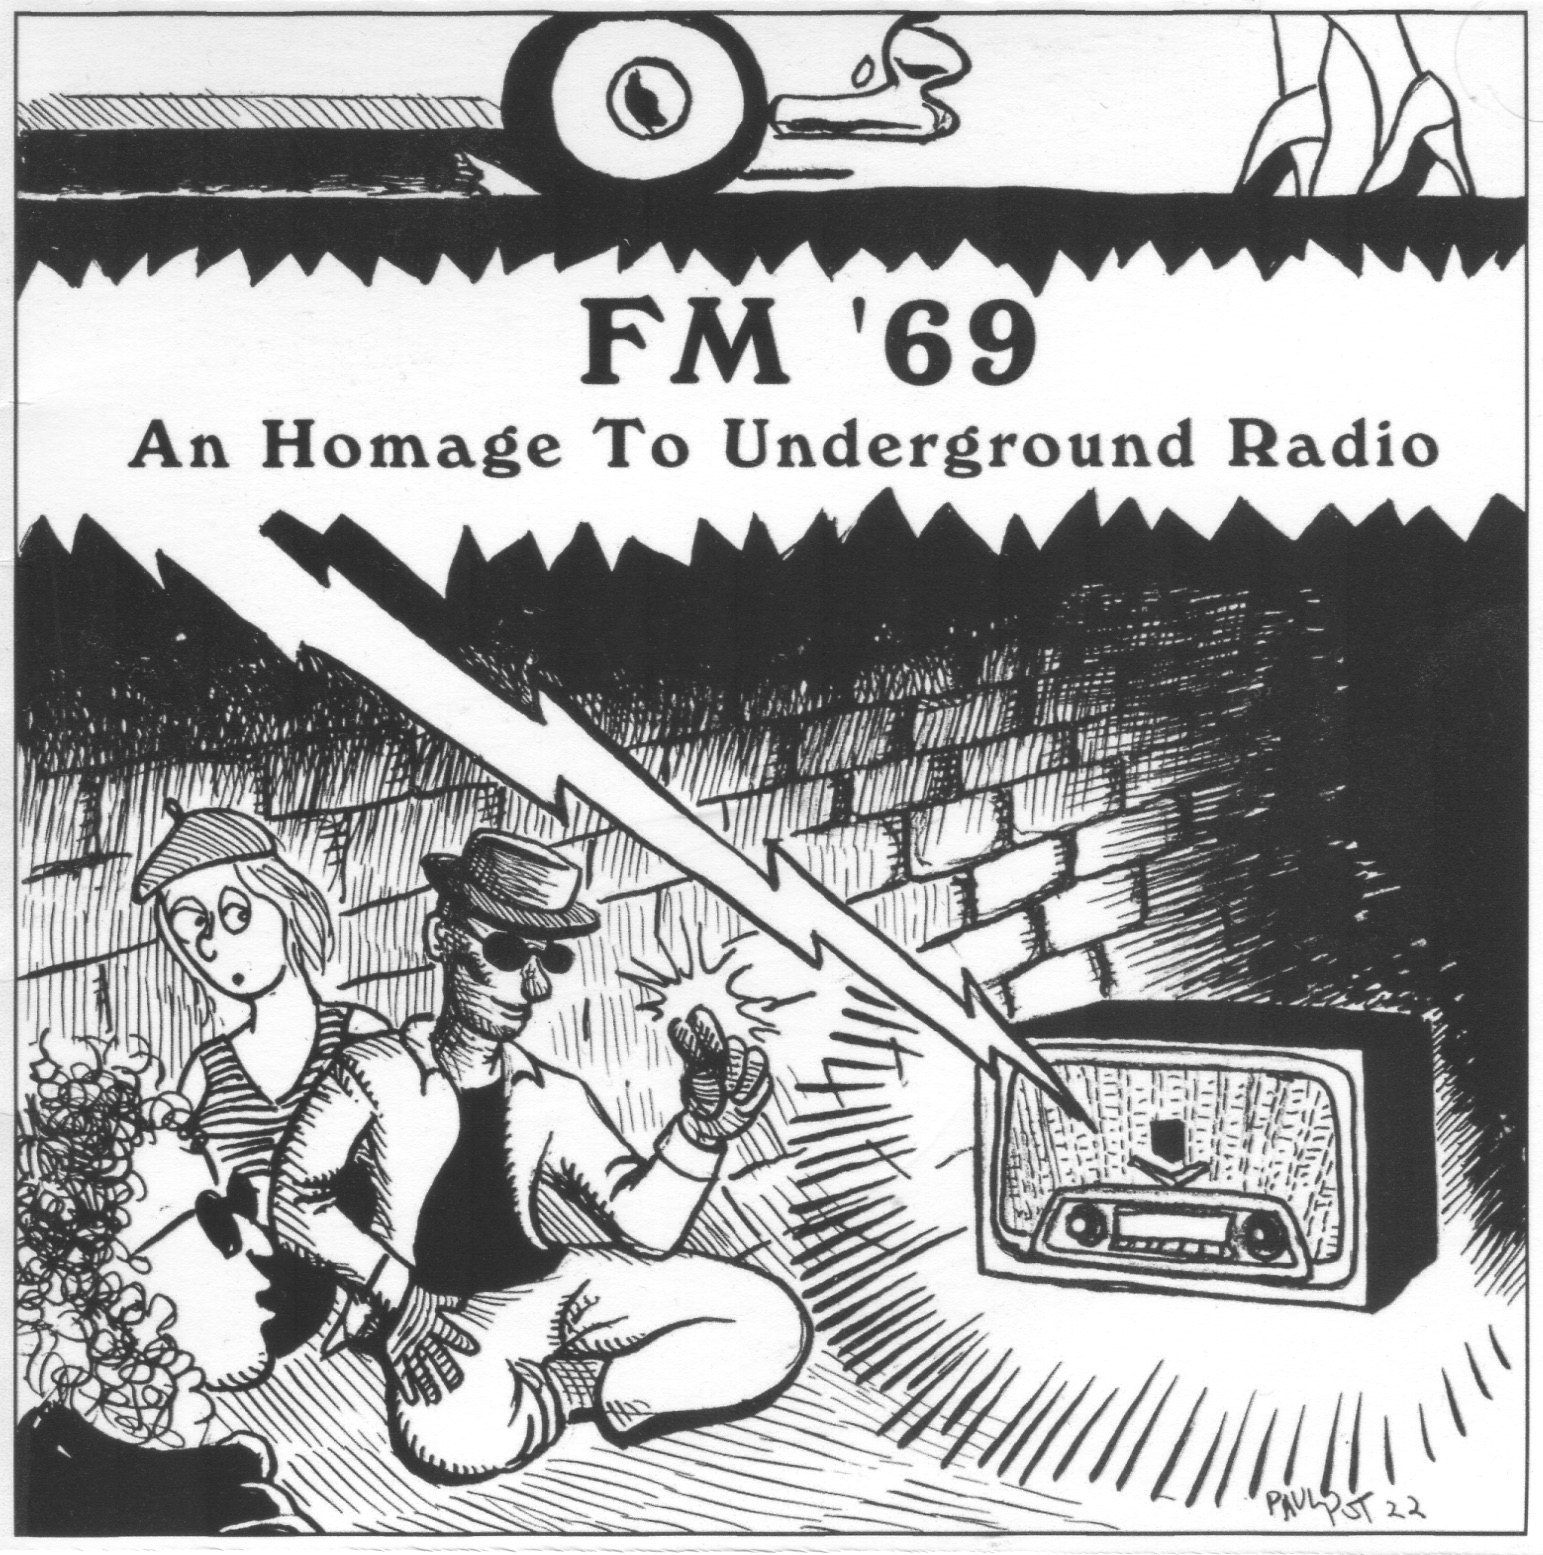 V/A FM '69 Homage To Underground Radio